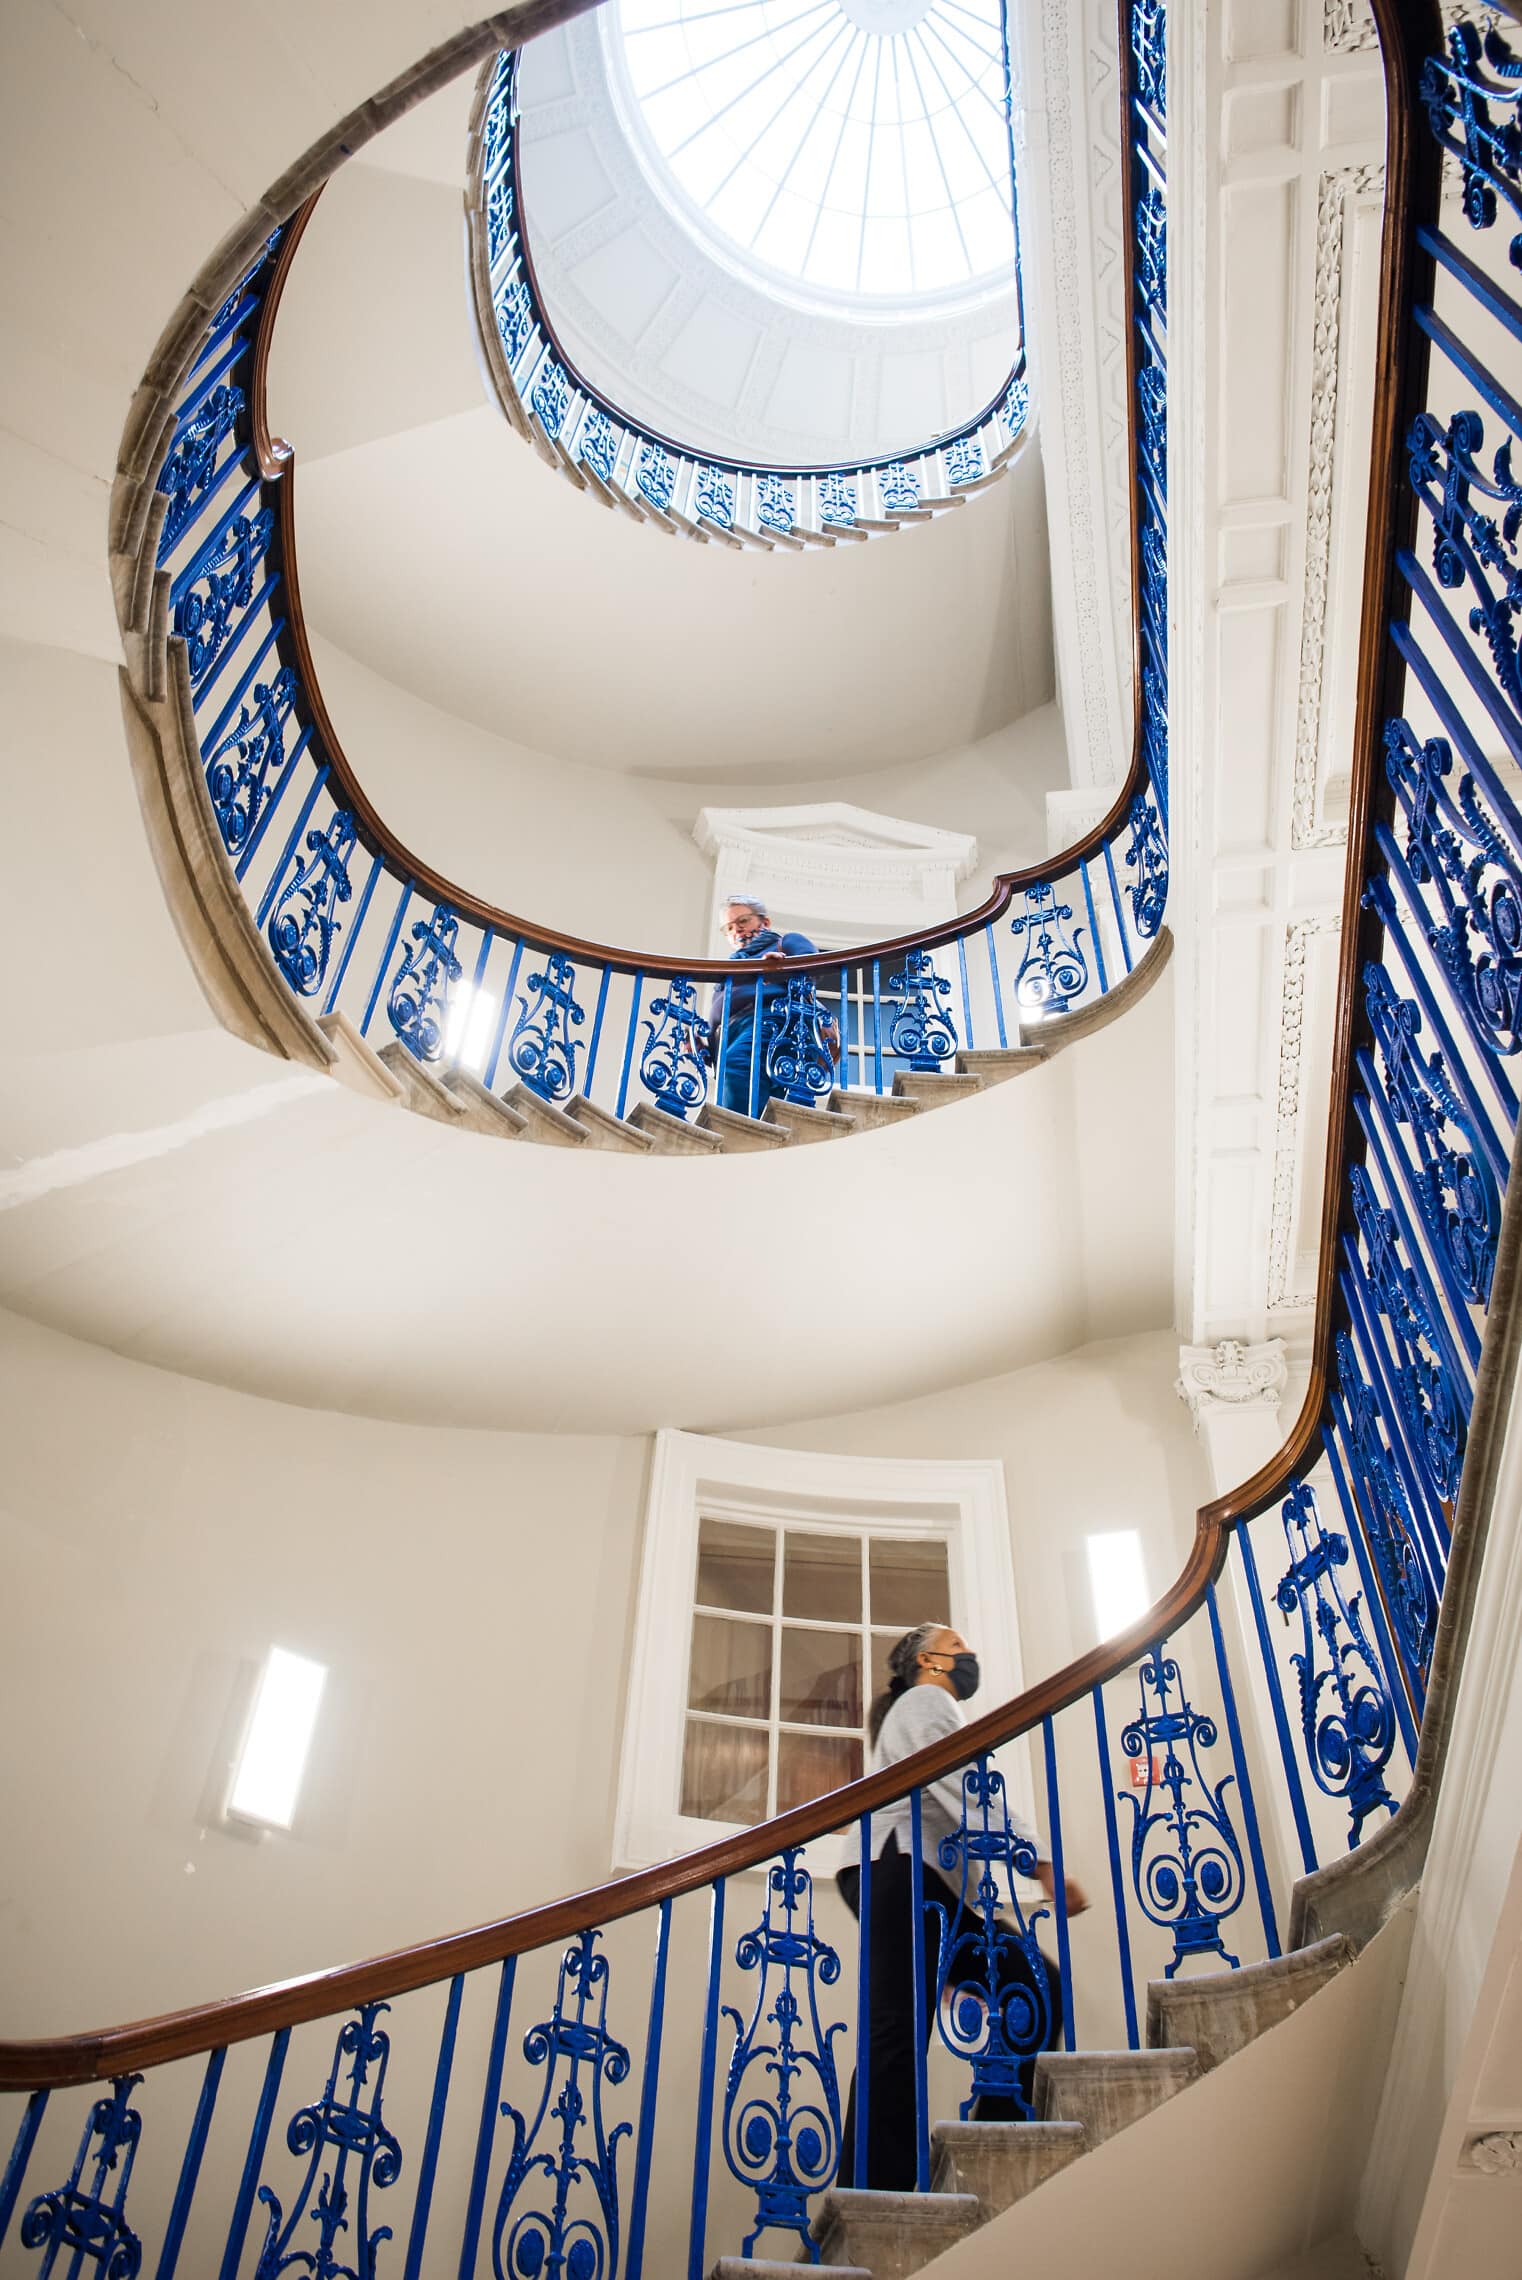 גרם המדרגות במרכז גלריית קורטאולד, לונדון (צילום: Jim Winslet)